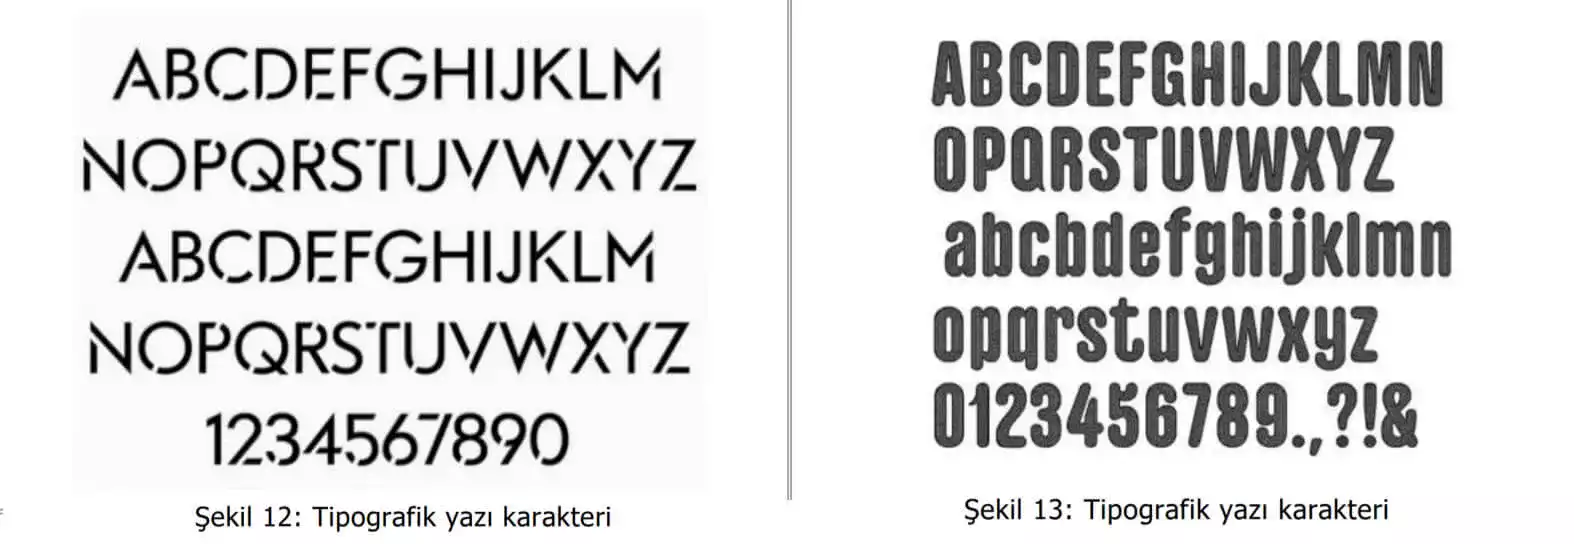 tipografik yazı karakter örnekleri-Kocaeli Web Tasarım